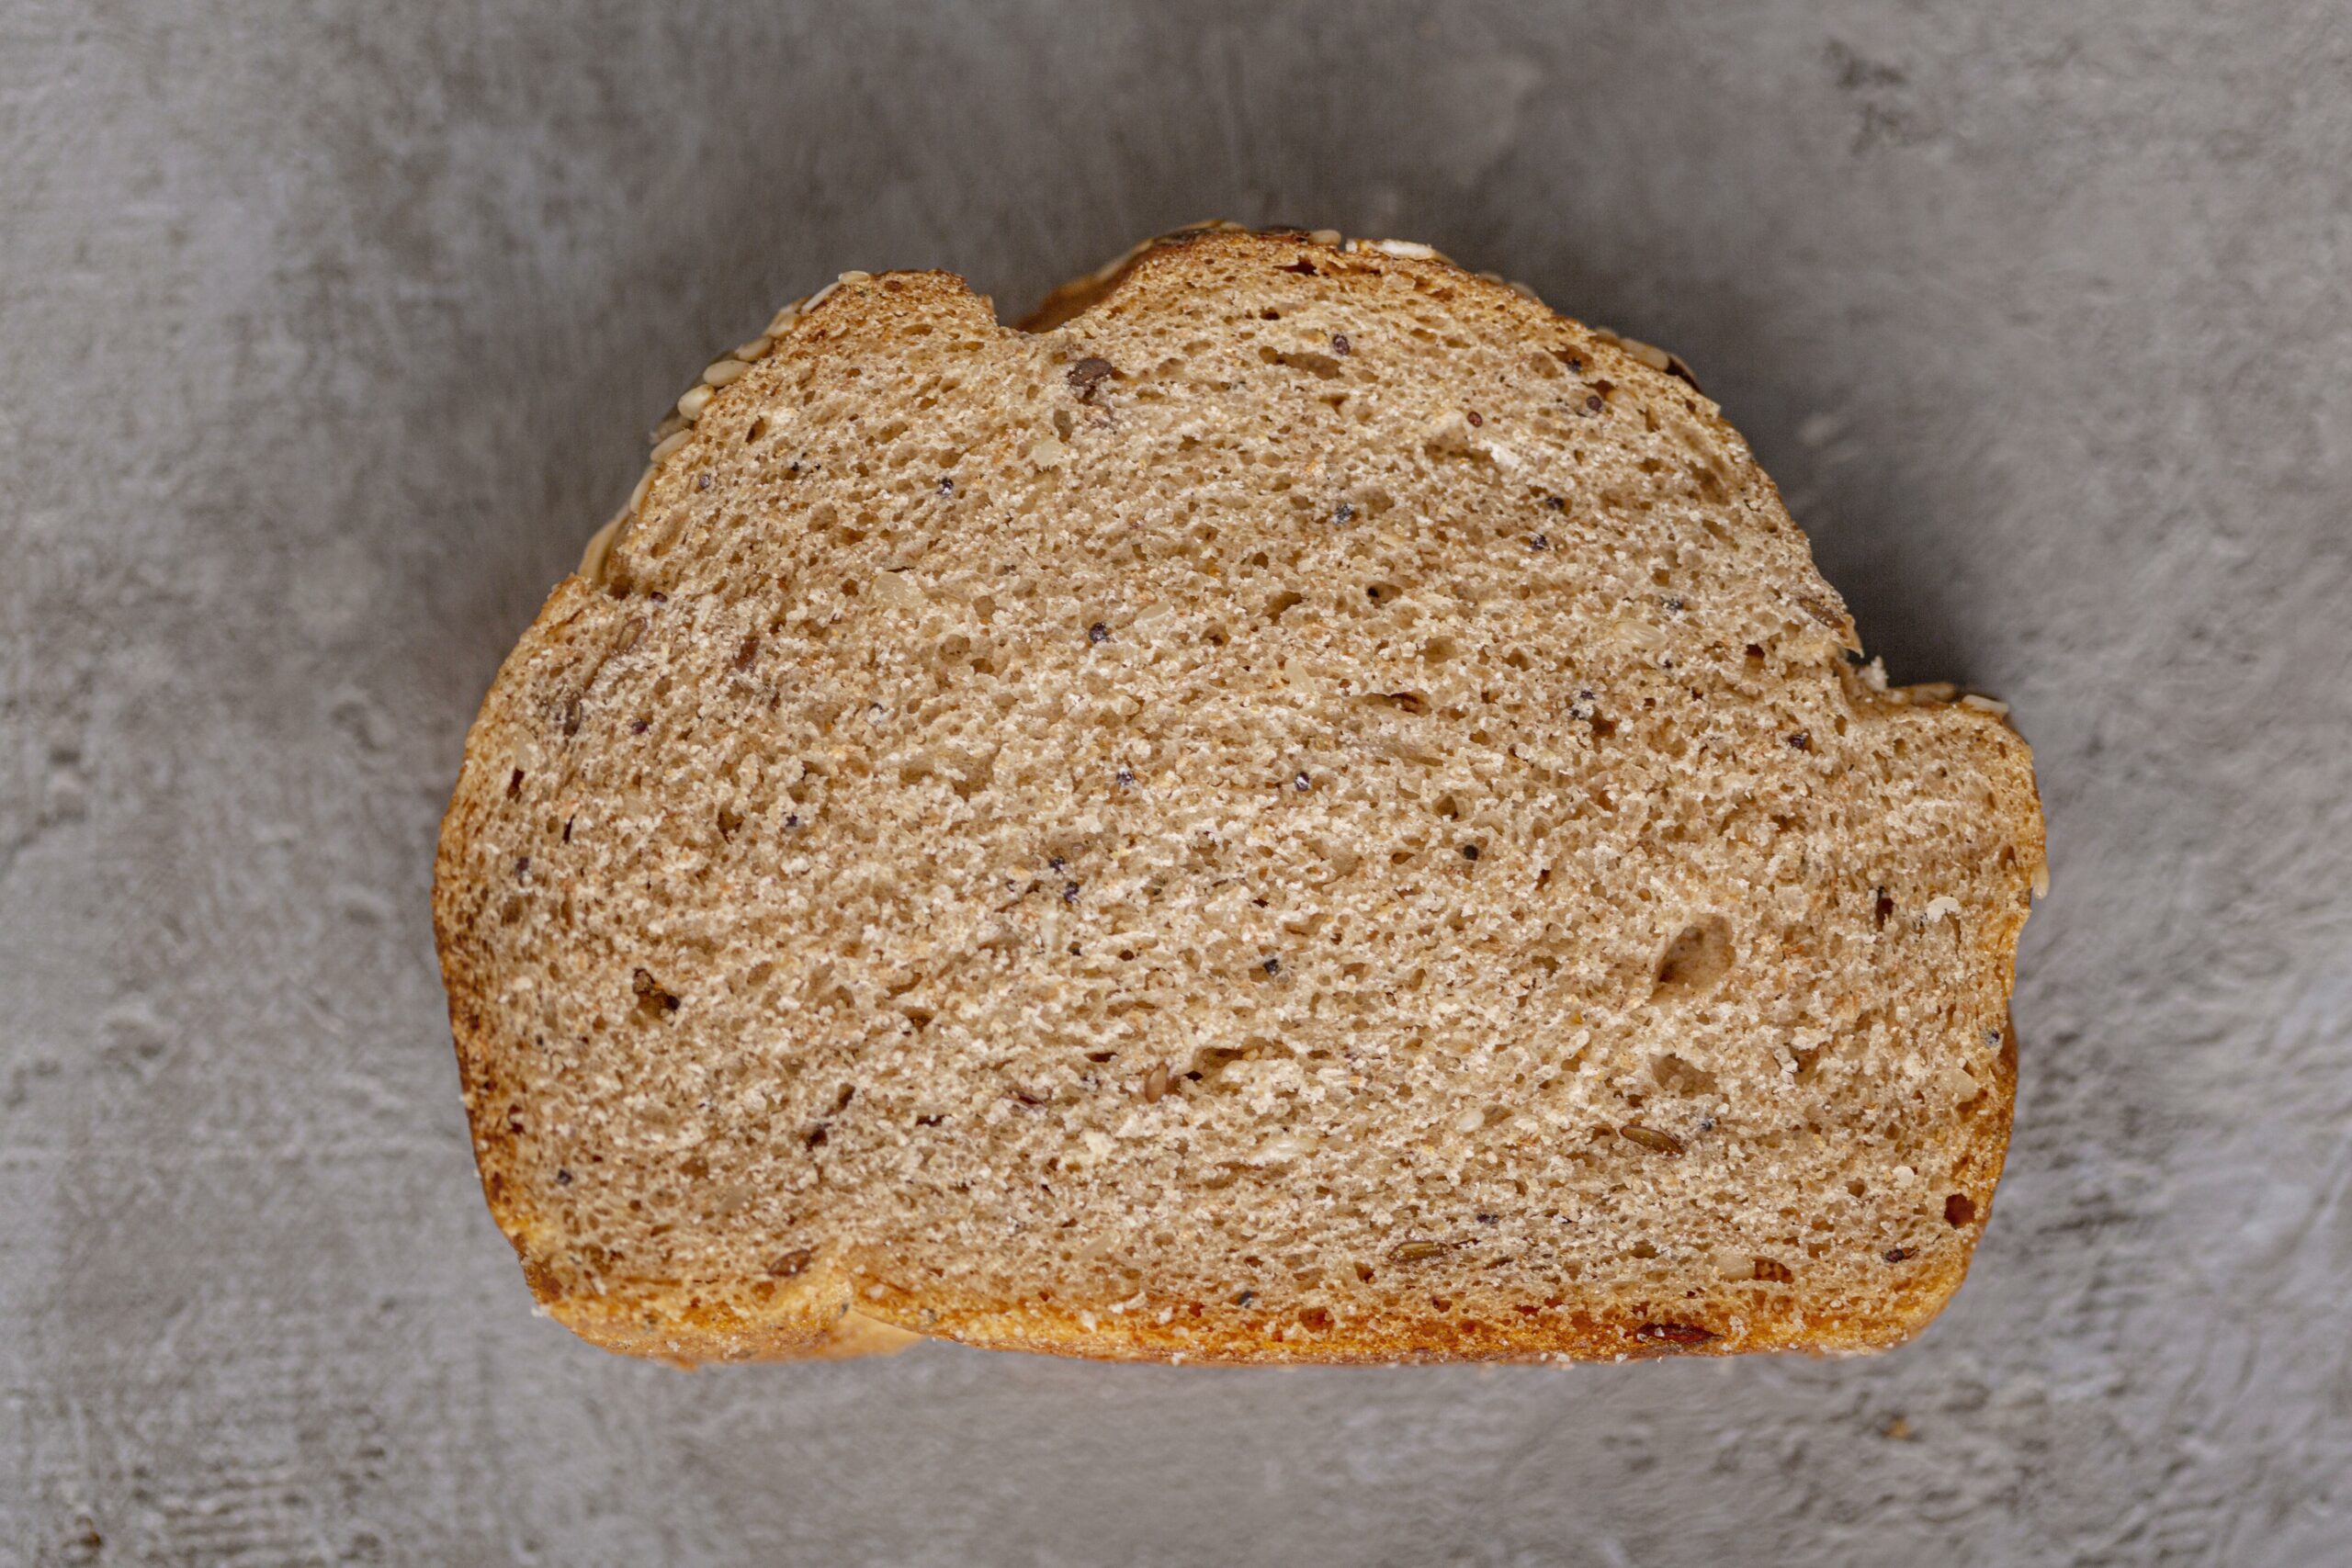 Verplicht Zeldzaamheid pauze Een sneetje brood zonder beleg. | Nationaal Zakat Fonds